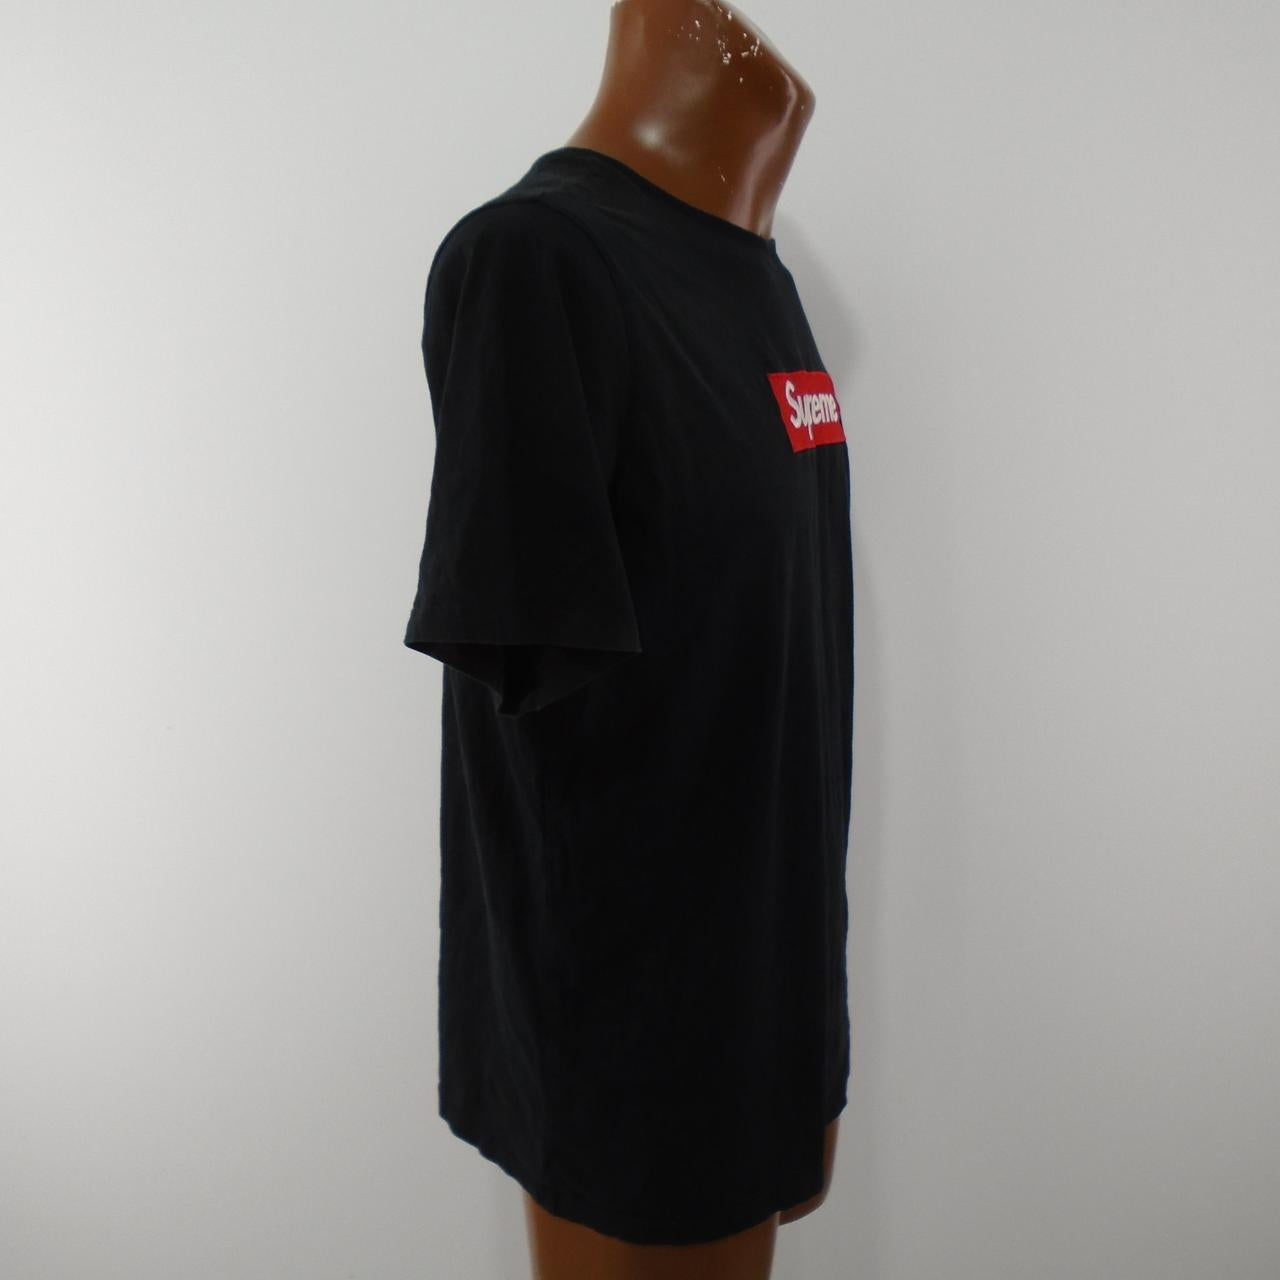 Men's T-Shirt Supreme. Black. L. Used. Good